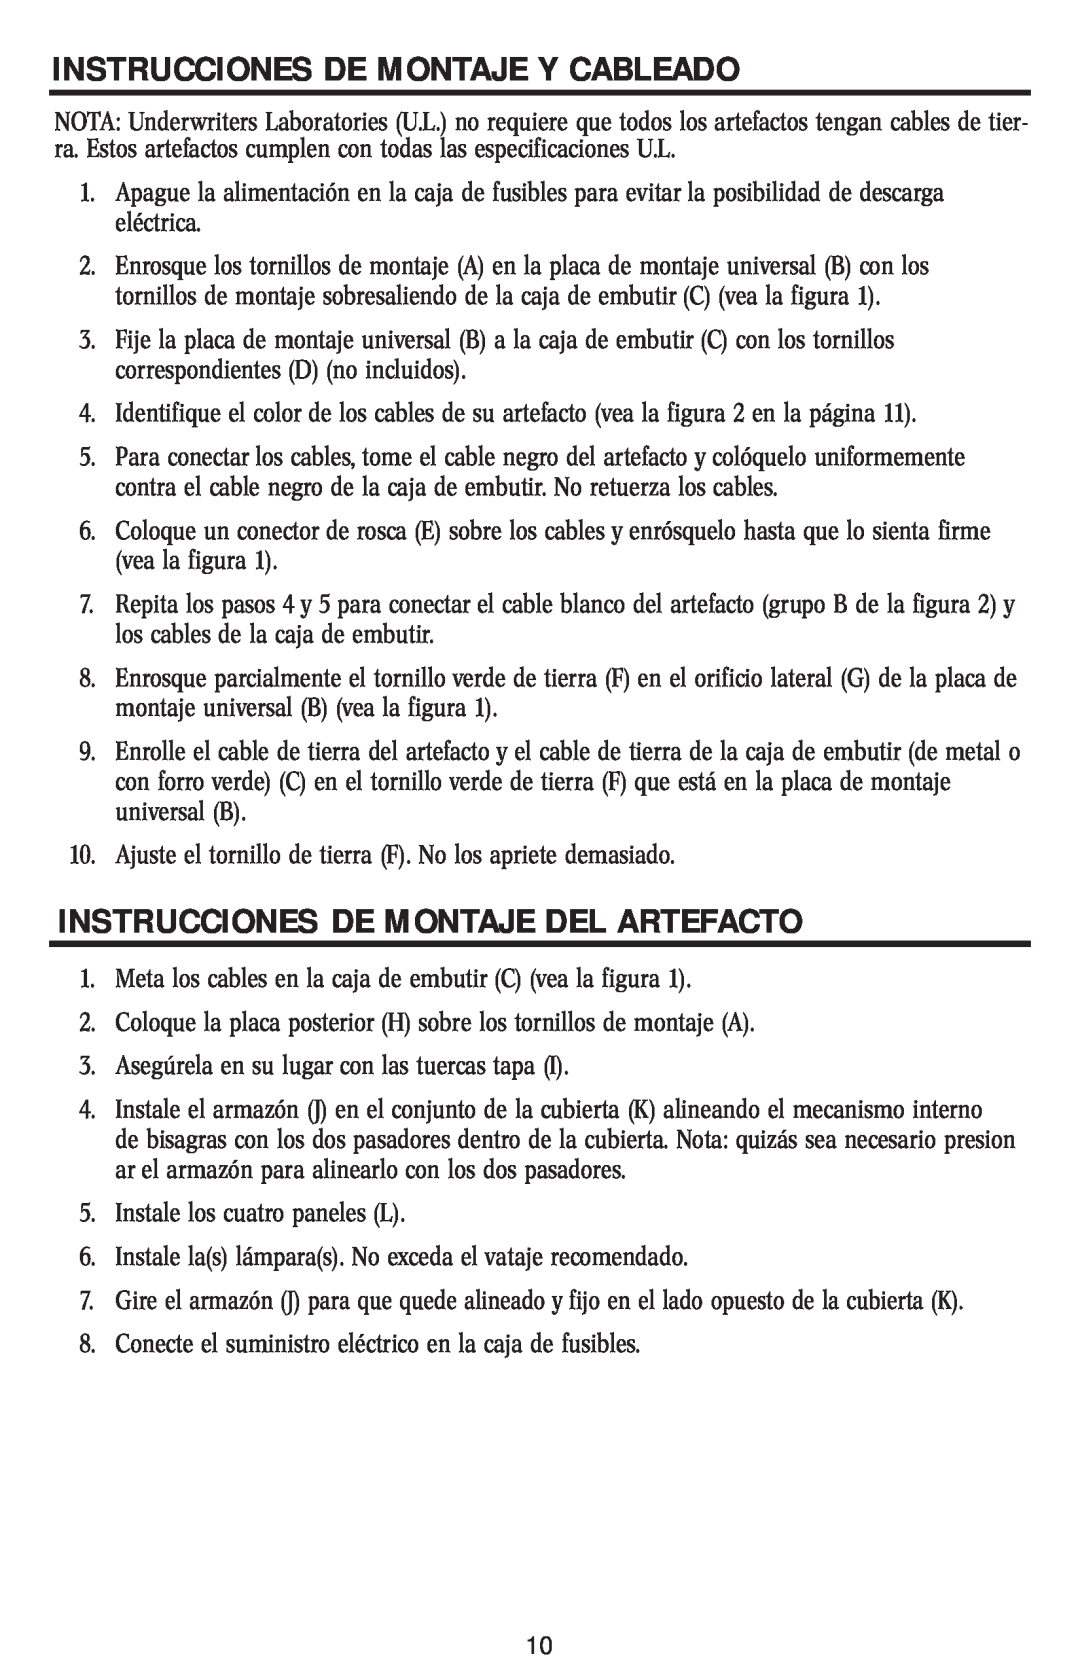 Westinghouse W-005 owner manual Instrucciones De Montaje Y Cableado, Instrucciones De Montaje Del Artefacto 